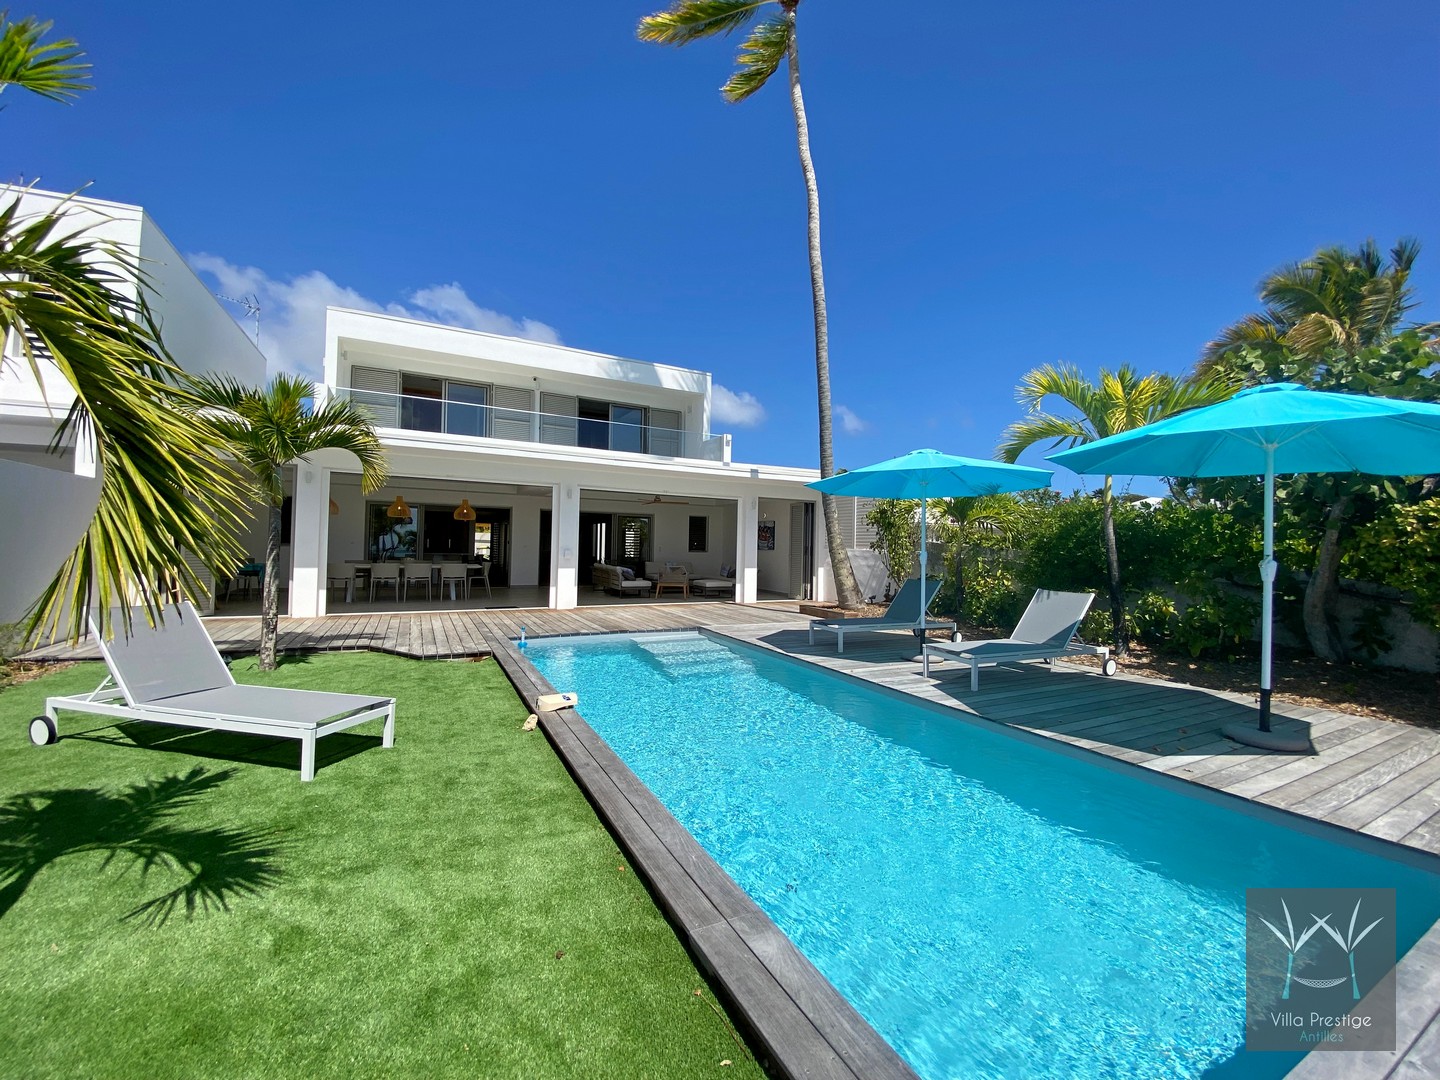 louer villa altéa pied dans l'eau avec piscine vacances en famille luxe guadeloupe